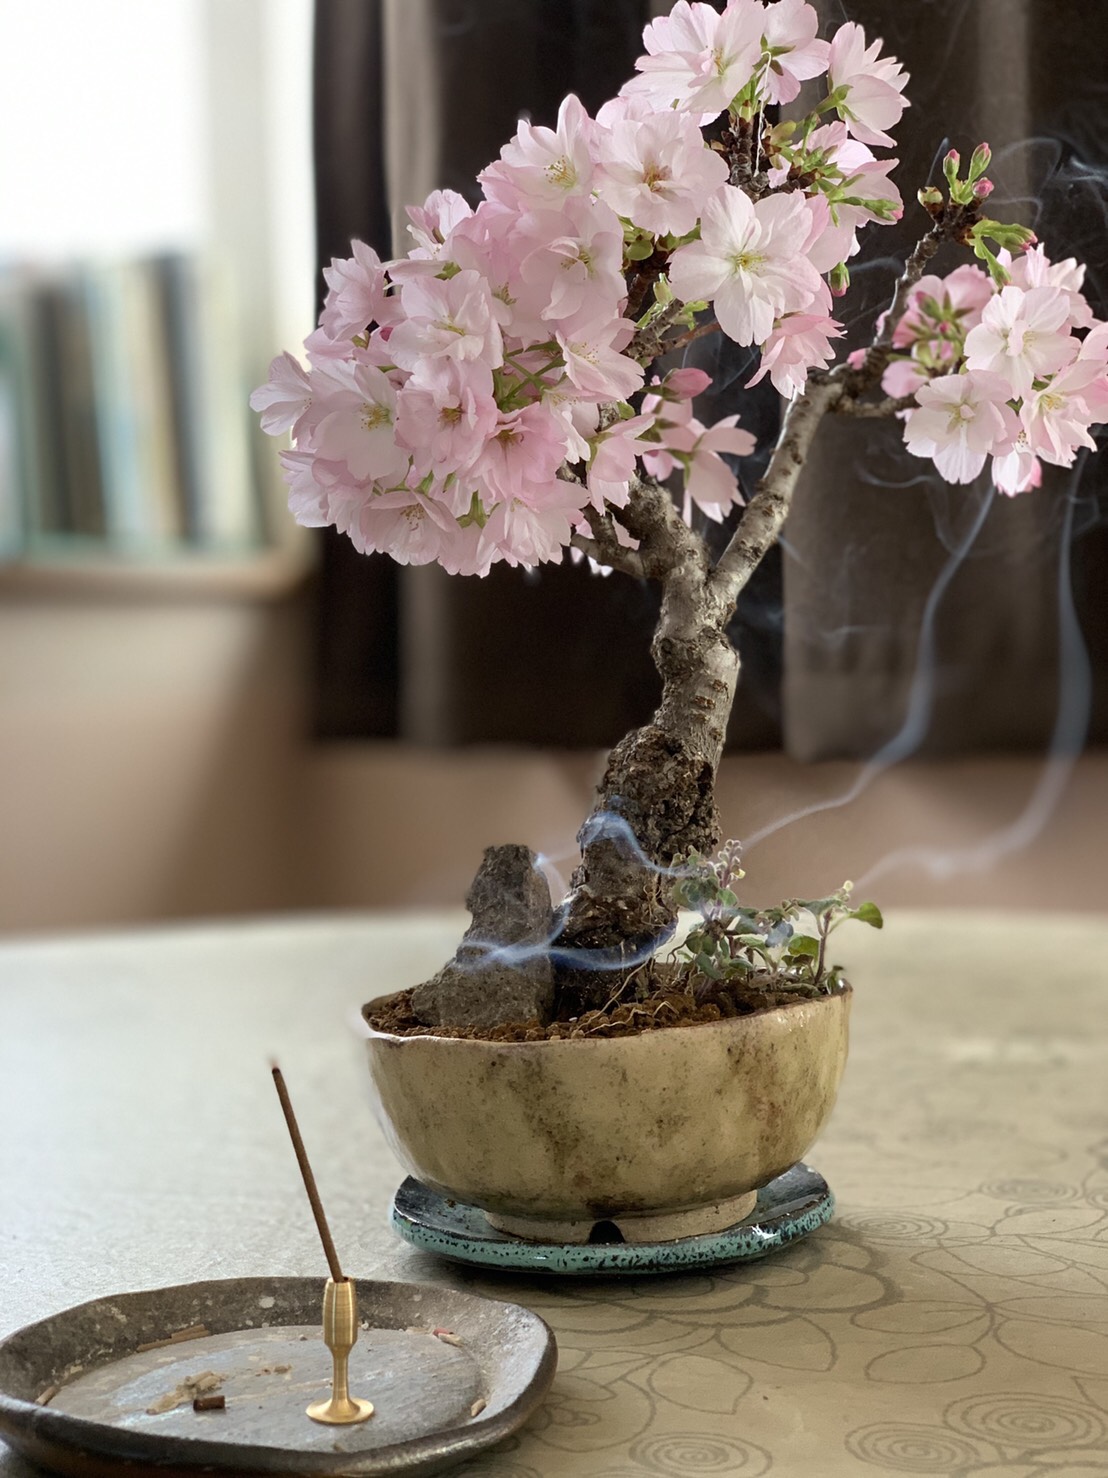 【香源 上野桜木店】昨日はお休みだったので、久々に趣味の盆栽を部屋に置いて一緒にお香を焚きました😊